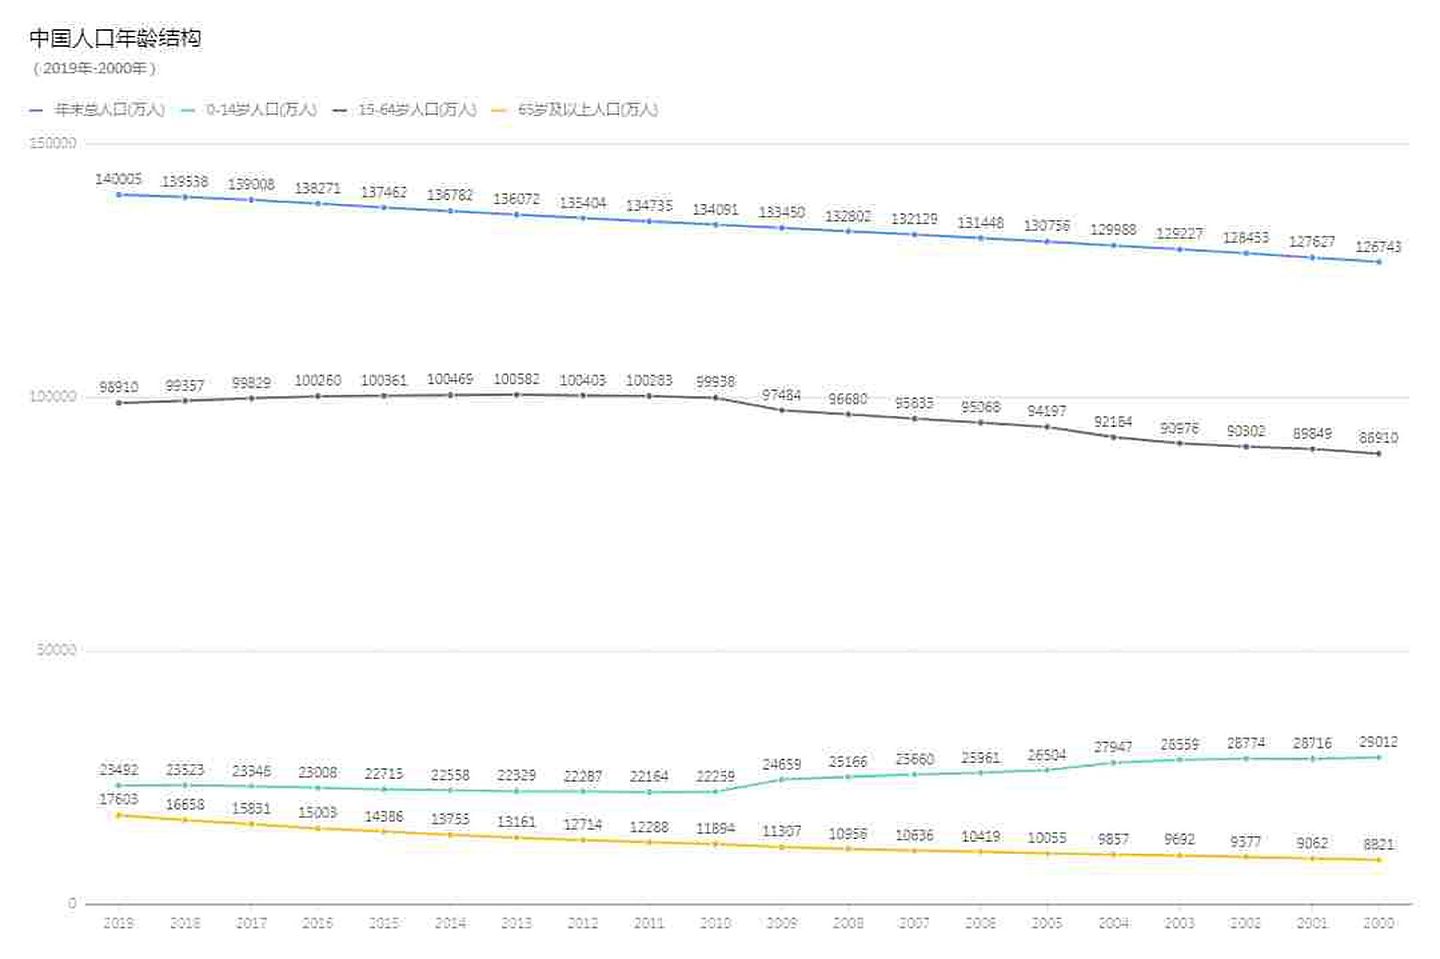 中国人口结构显示，老龄化趋势明显。（多维新闻制作）